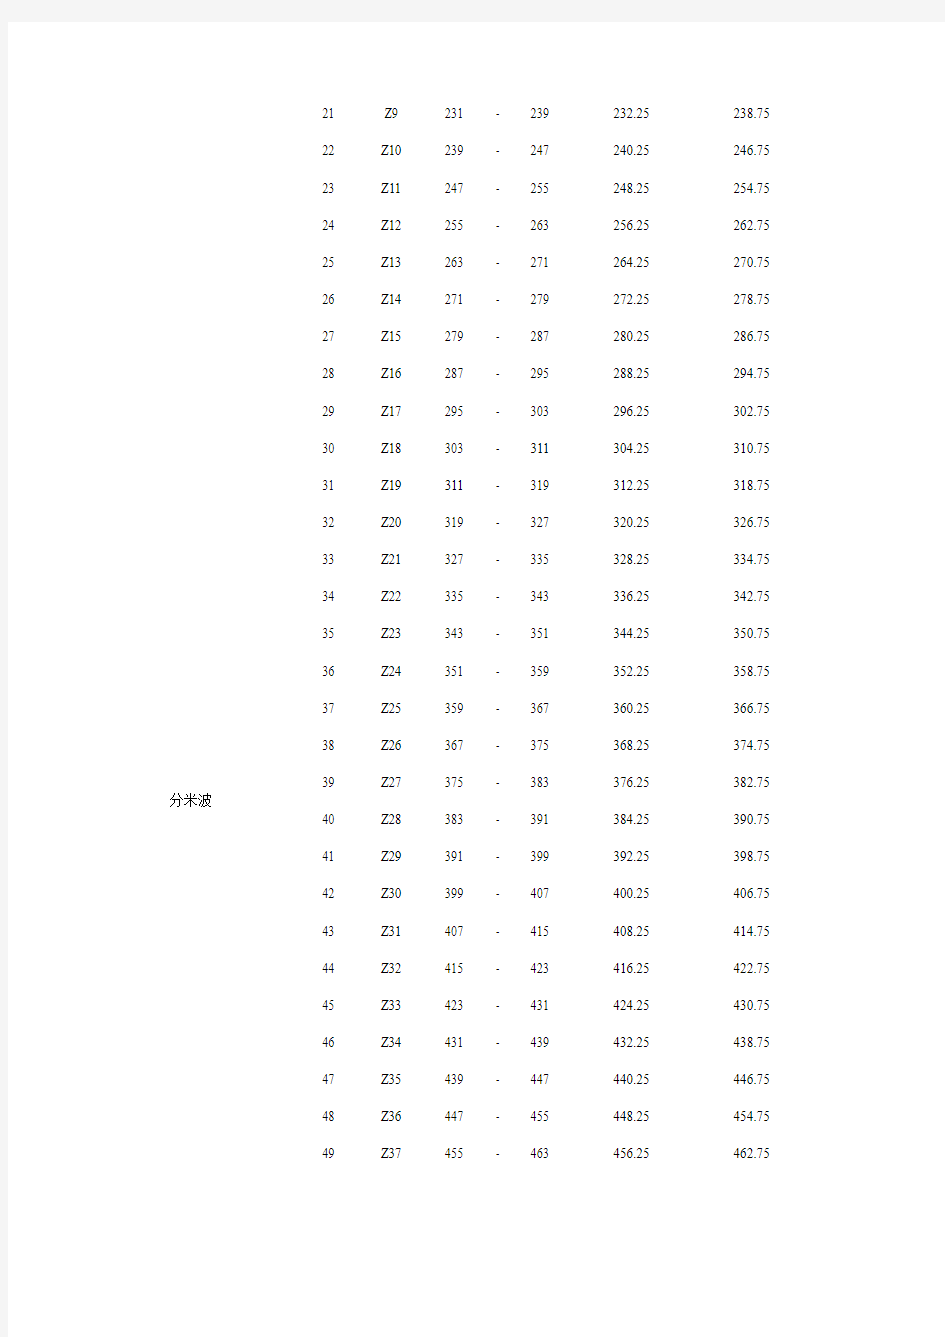 中国有线电视电视频道频率划分表